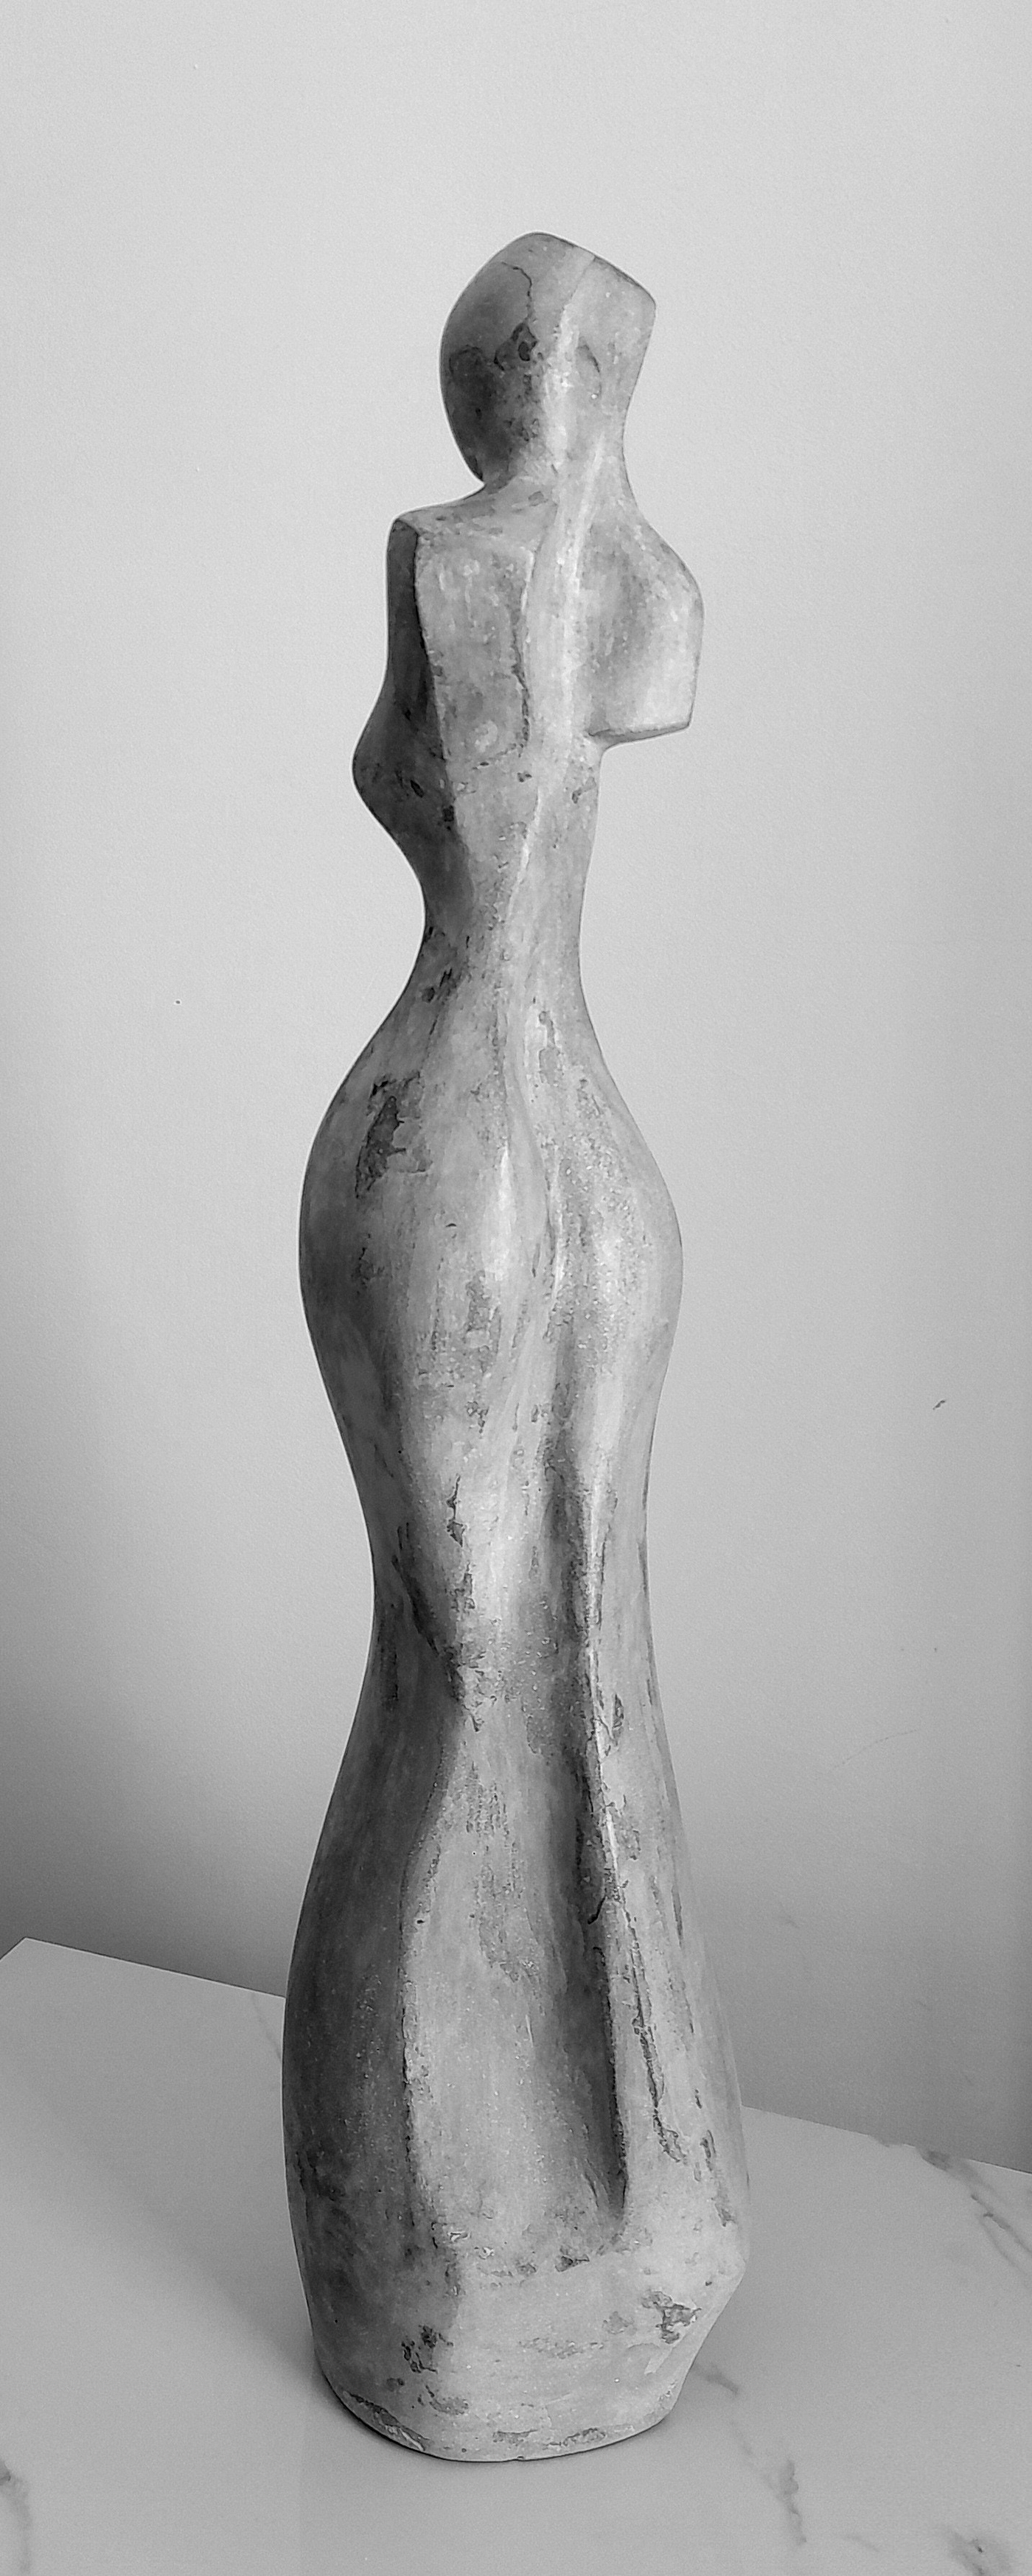 abstract concrete figurative sculpture clark camilleri female escultura modern cubism cubist